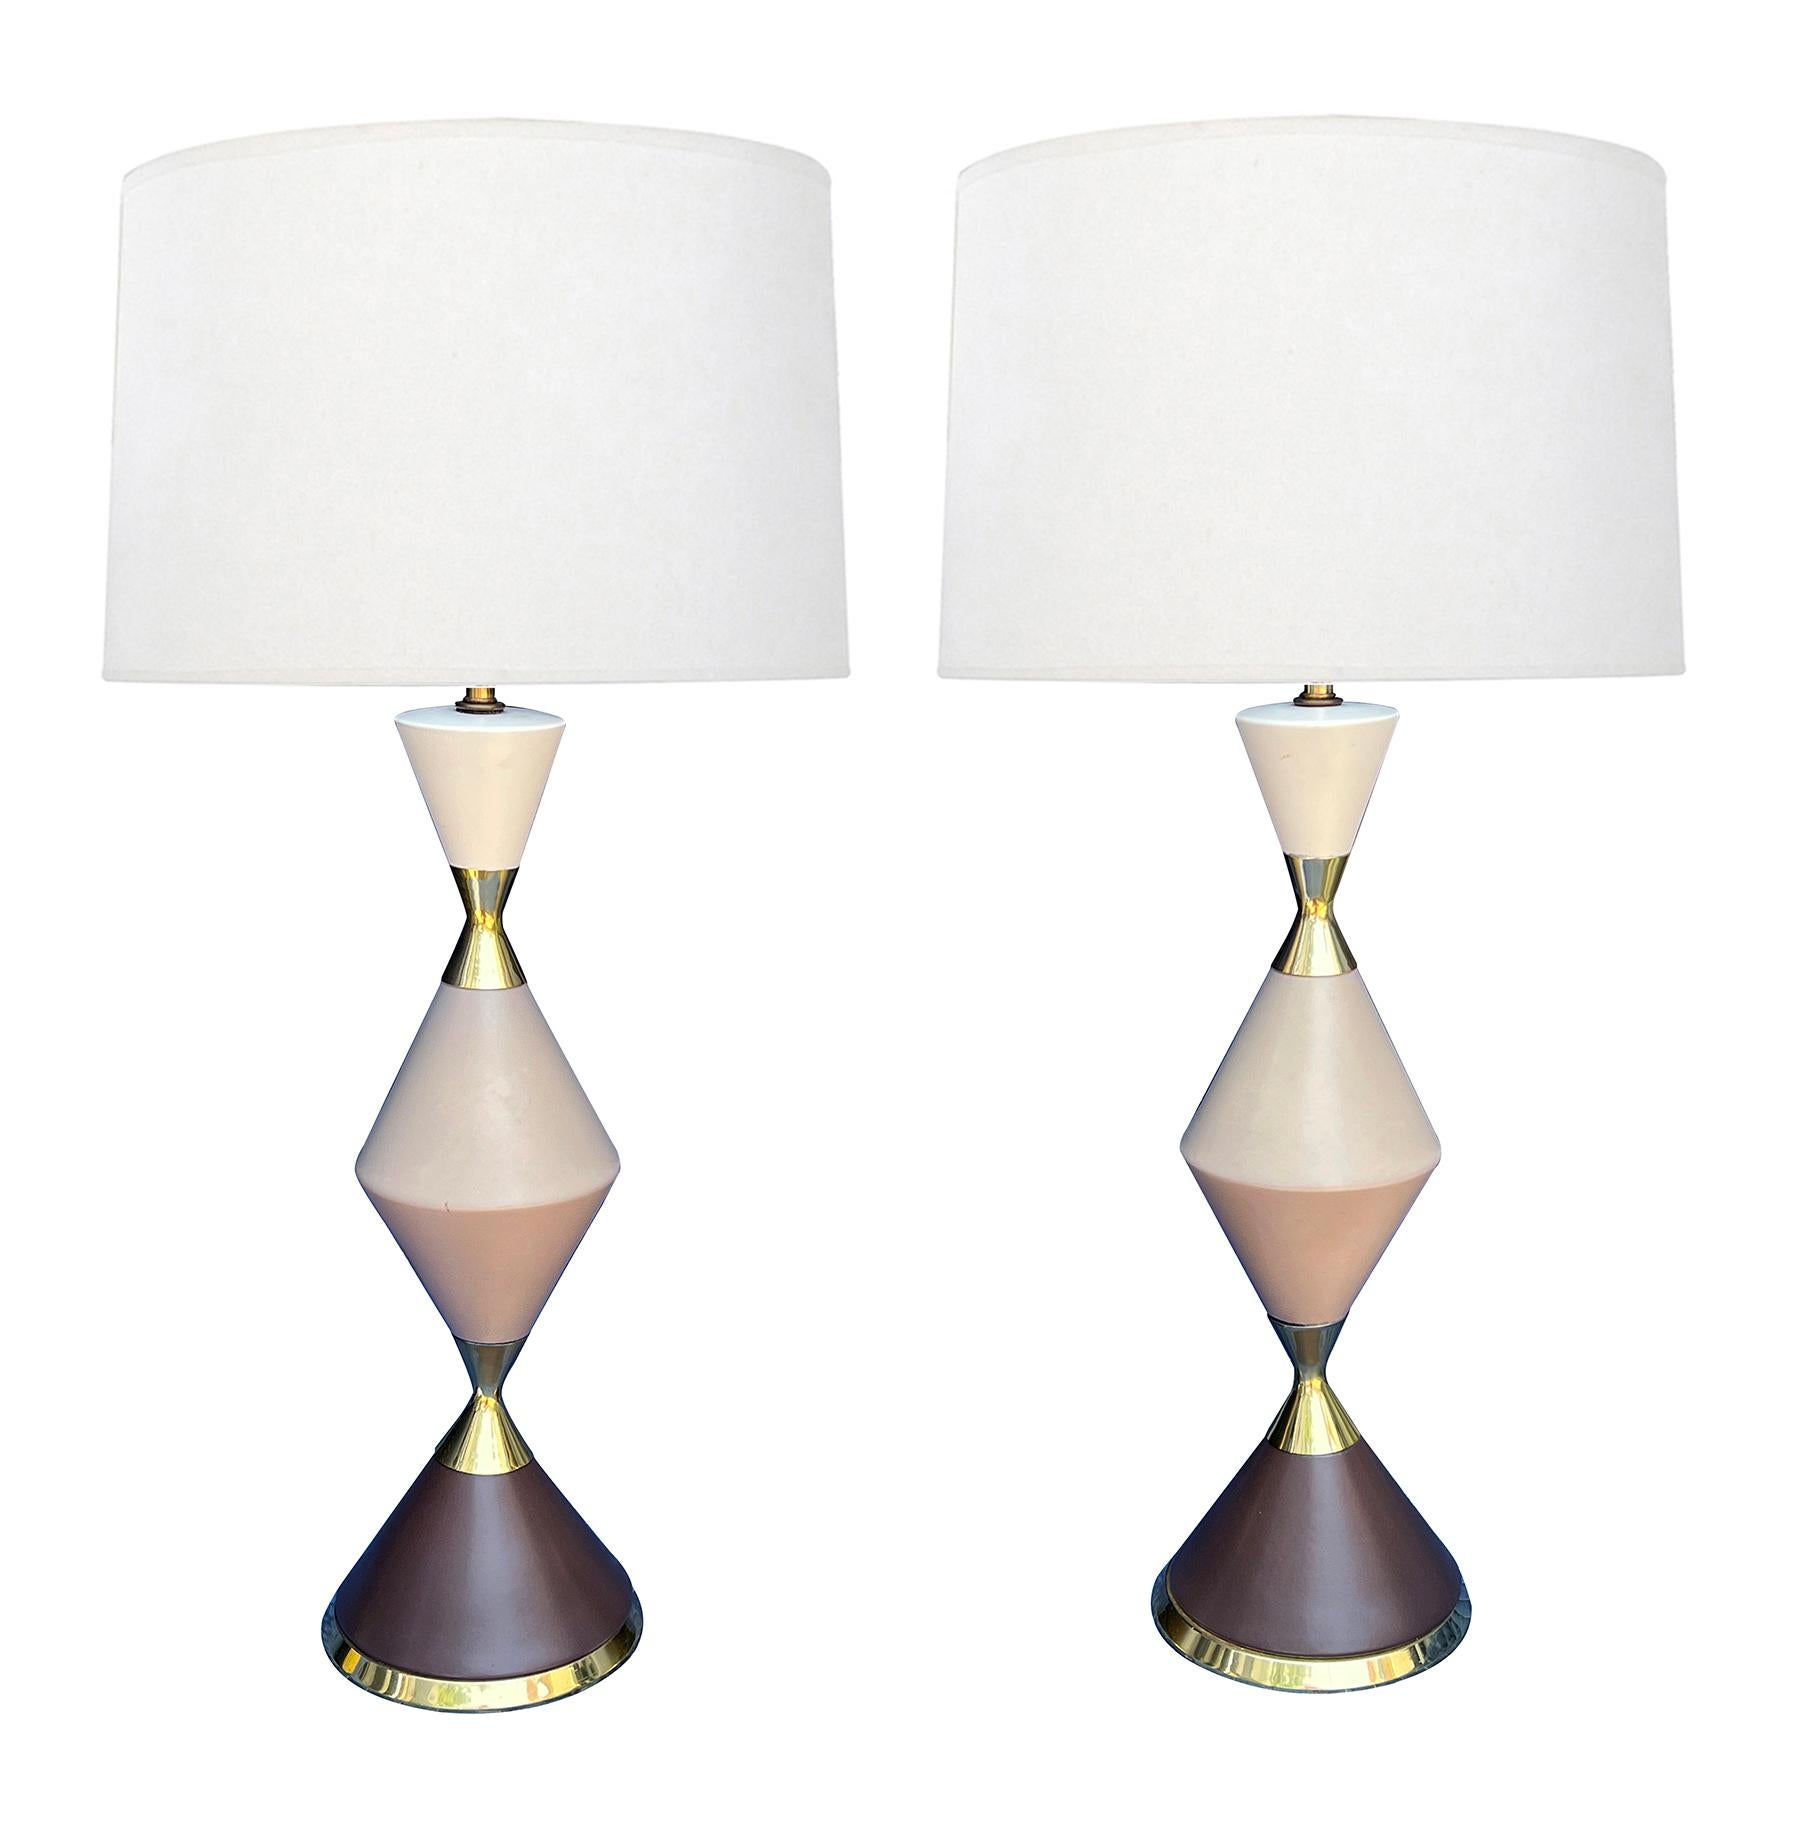 Le meilleur du design d'après-guerre, chaque lampe étant composée d'éléments émaillés tricolores de forme conique et de montures en laiton. Gerald Thurston était l'un des concepteurs de luminaires américains les plus créatifs de l'après-guerre. Ses